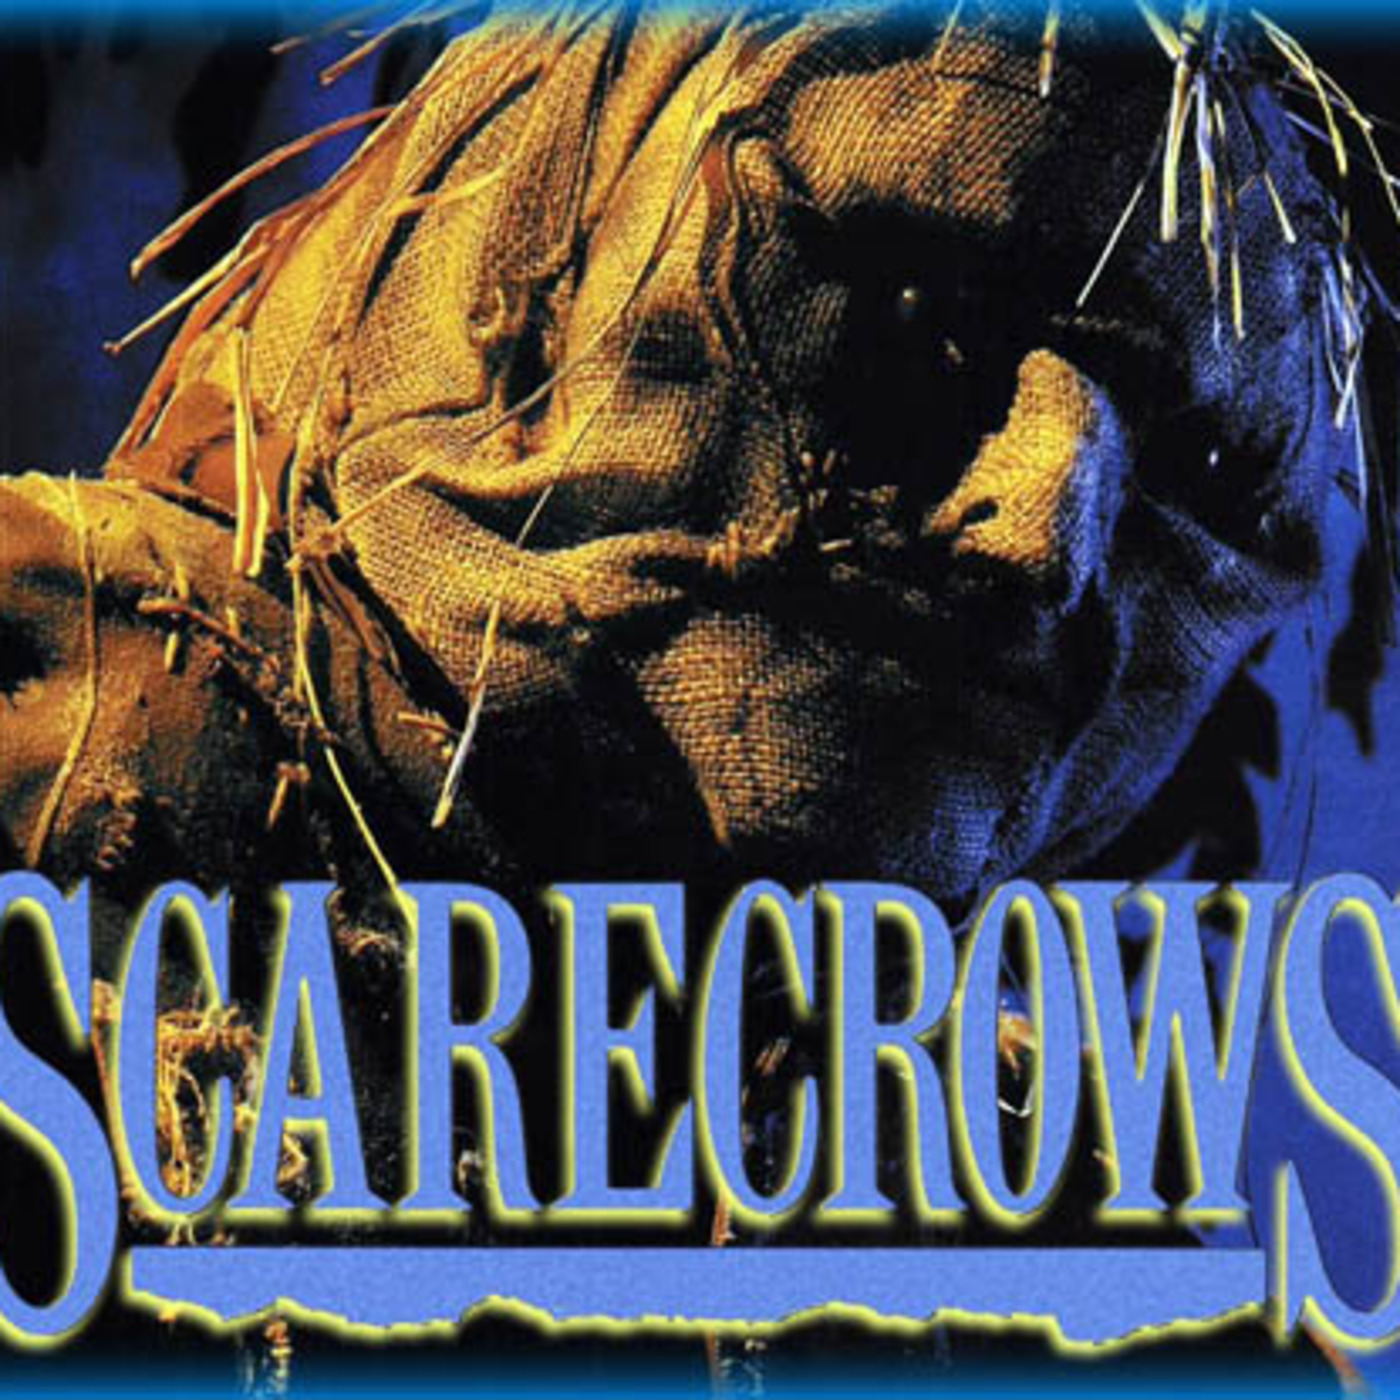 Episode 138: Horror 101 - Episode 138:  Scarecrows (1988)